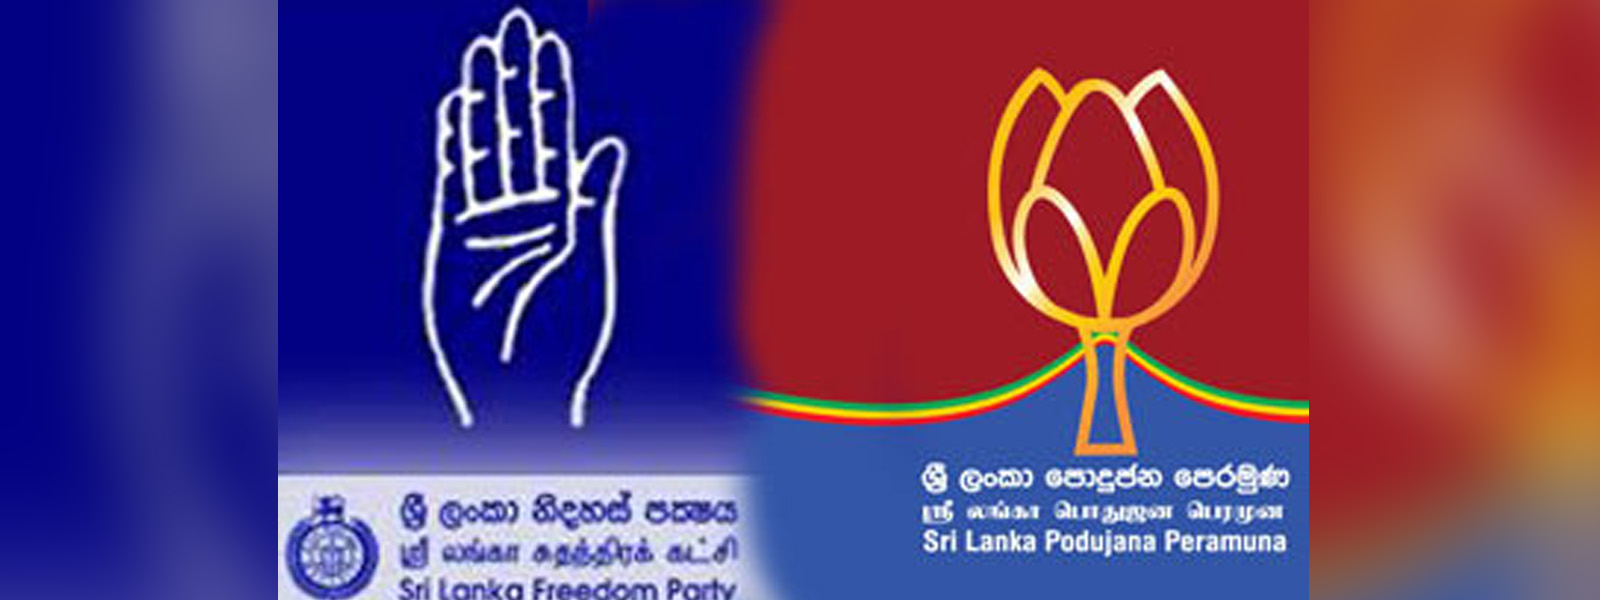 SLFP SLPP coalition, SLNPA formed